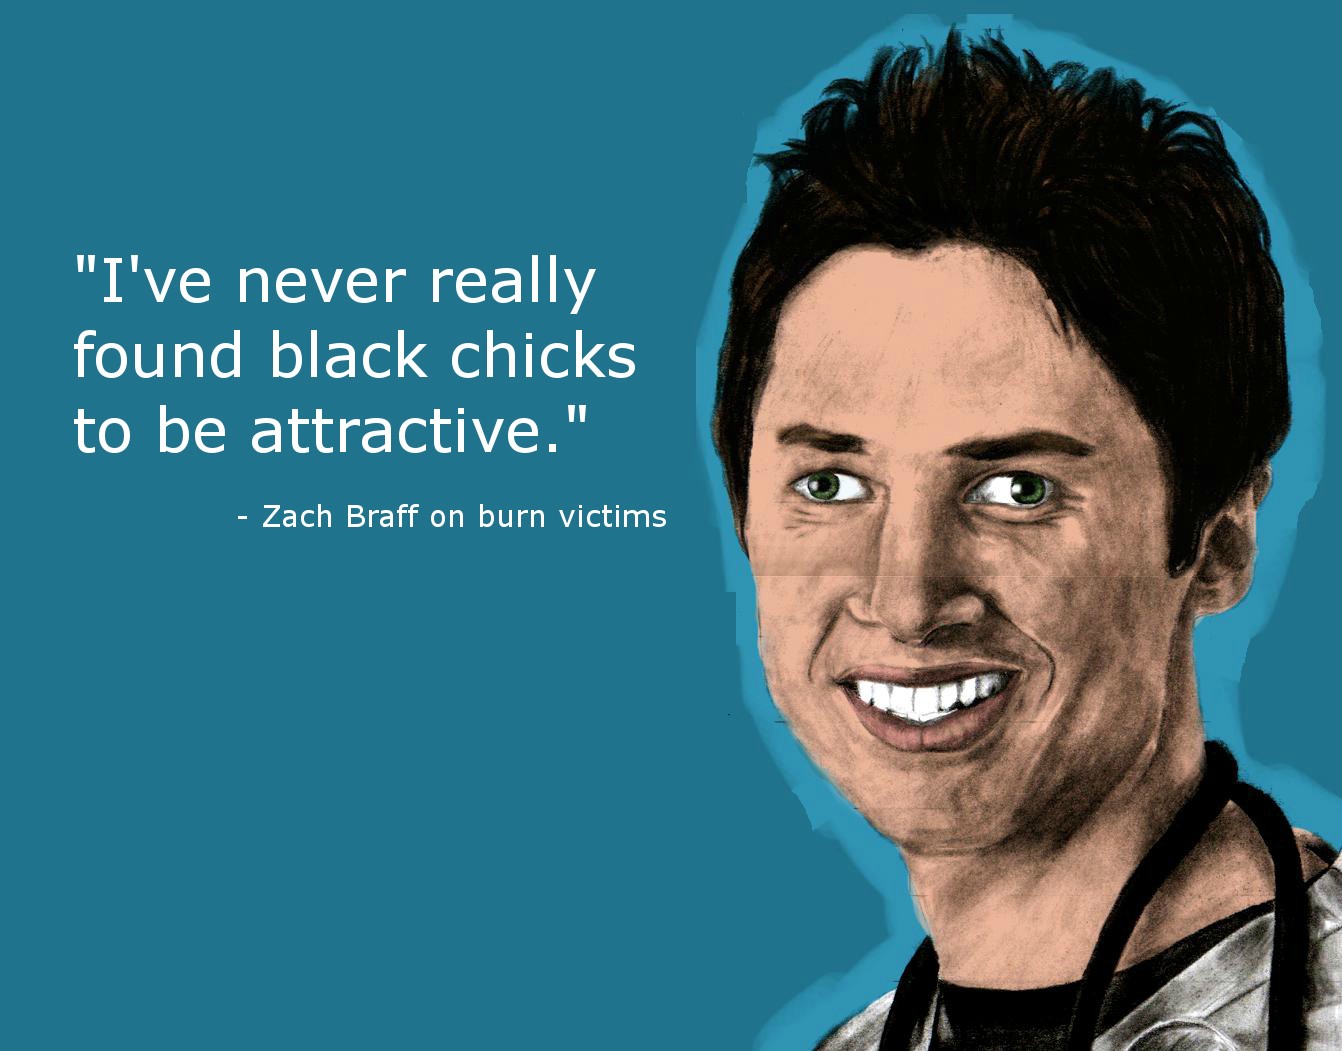 Zach Braff's quote